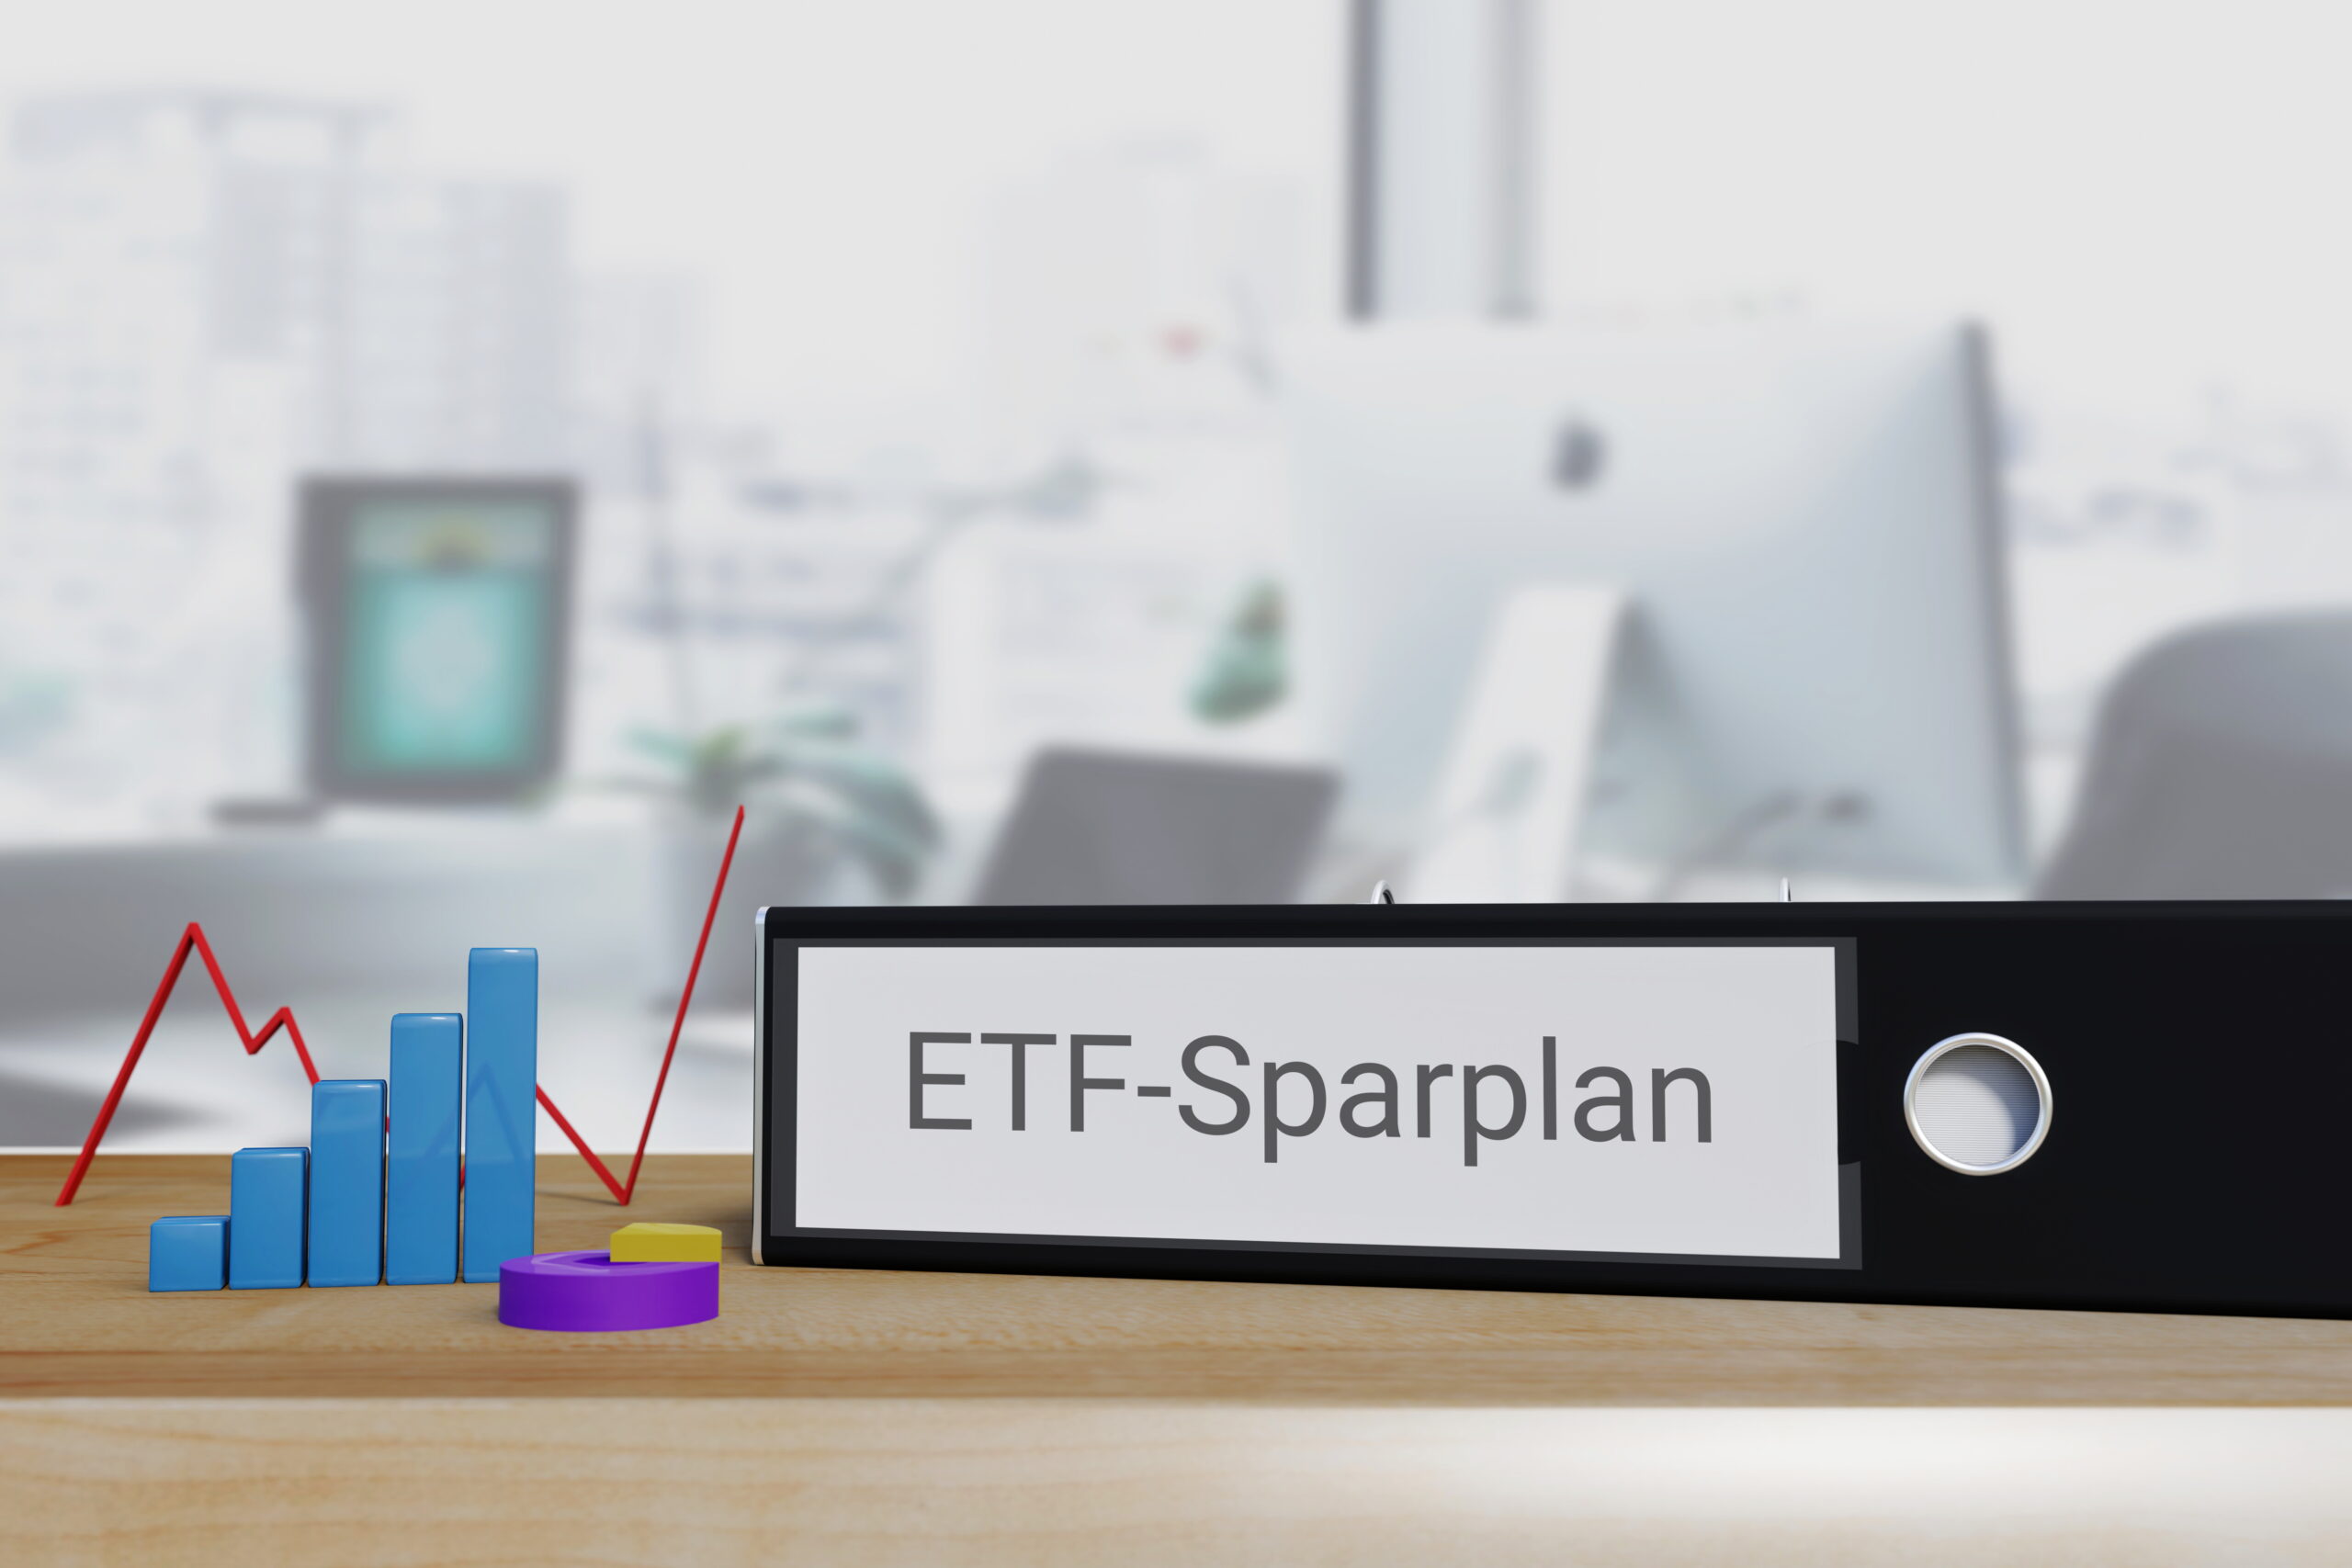 ETF-Sparplan